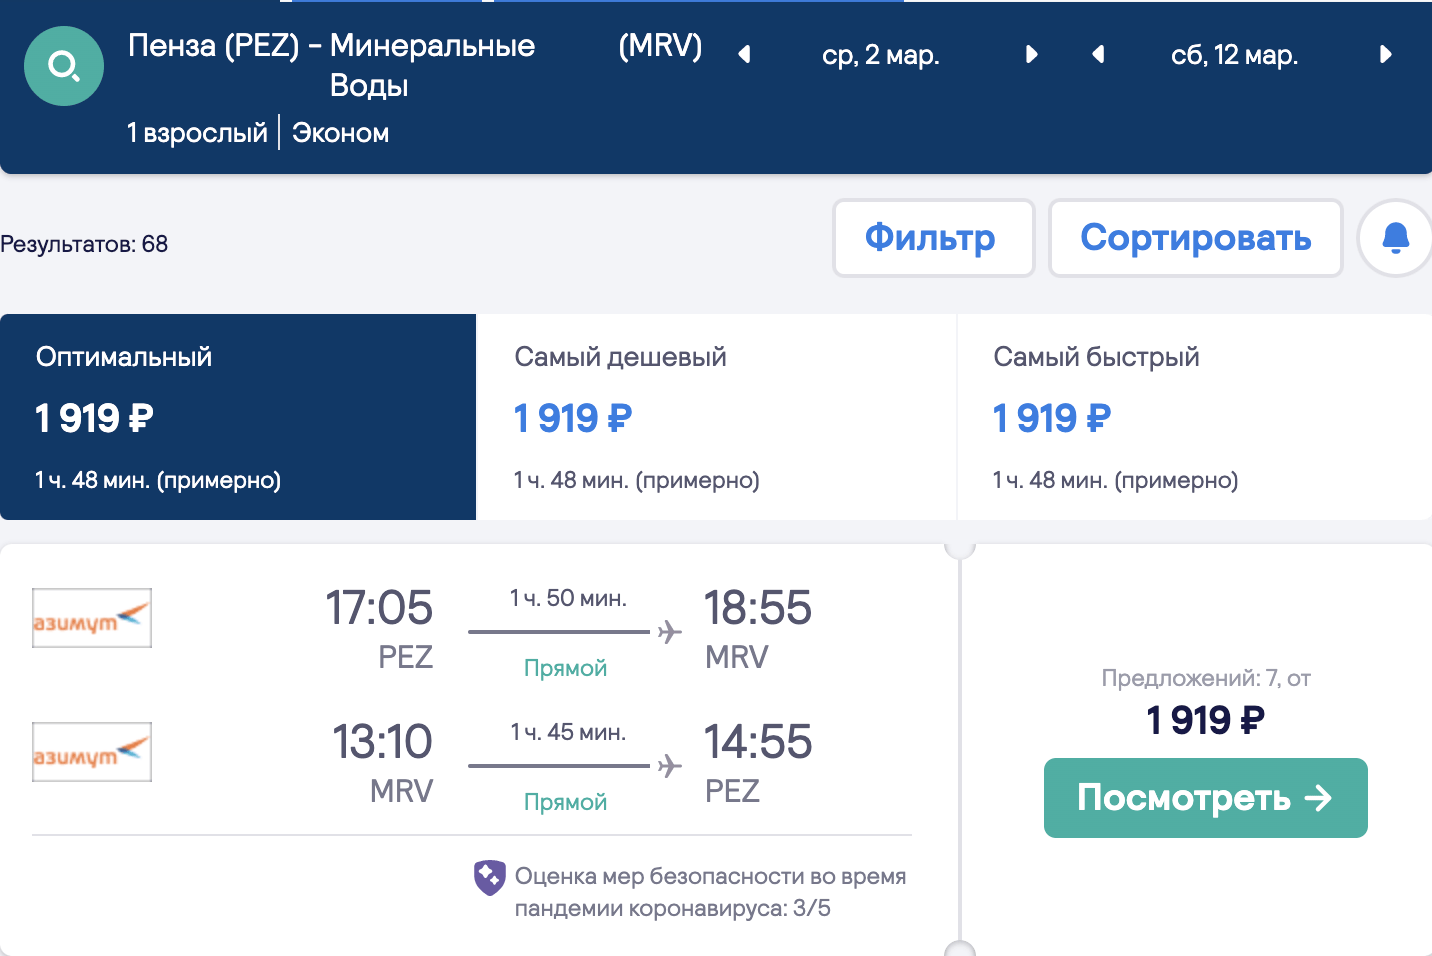 Große Auswahl an günstigen Flügen aus Regionen nach Krasnodar und Minvody ab 1800₽ Hin- und Rückflug